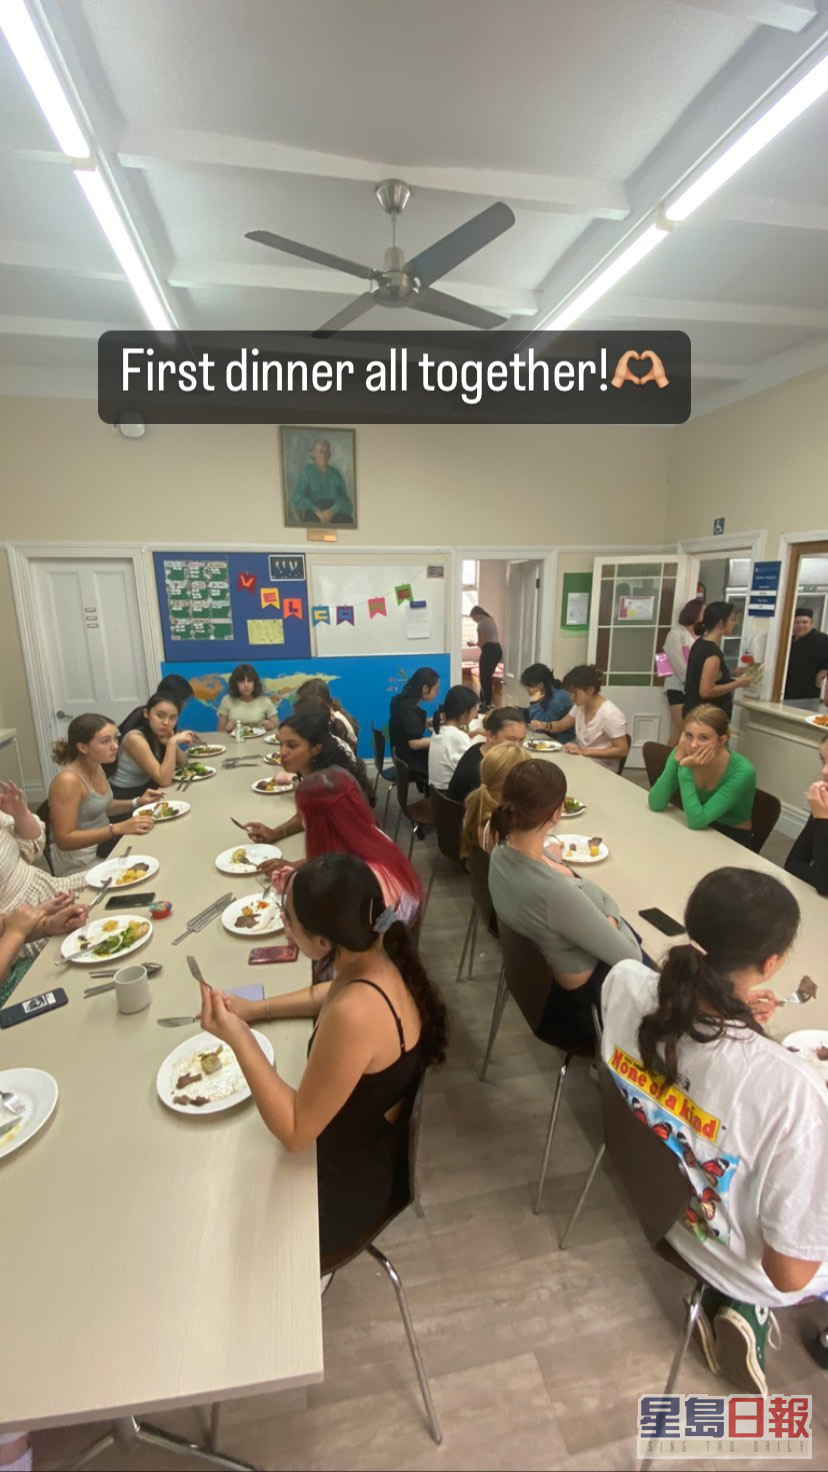 之前分享与同学首次一同享受晚餐。